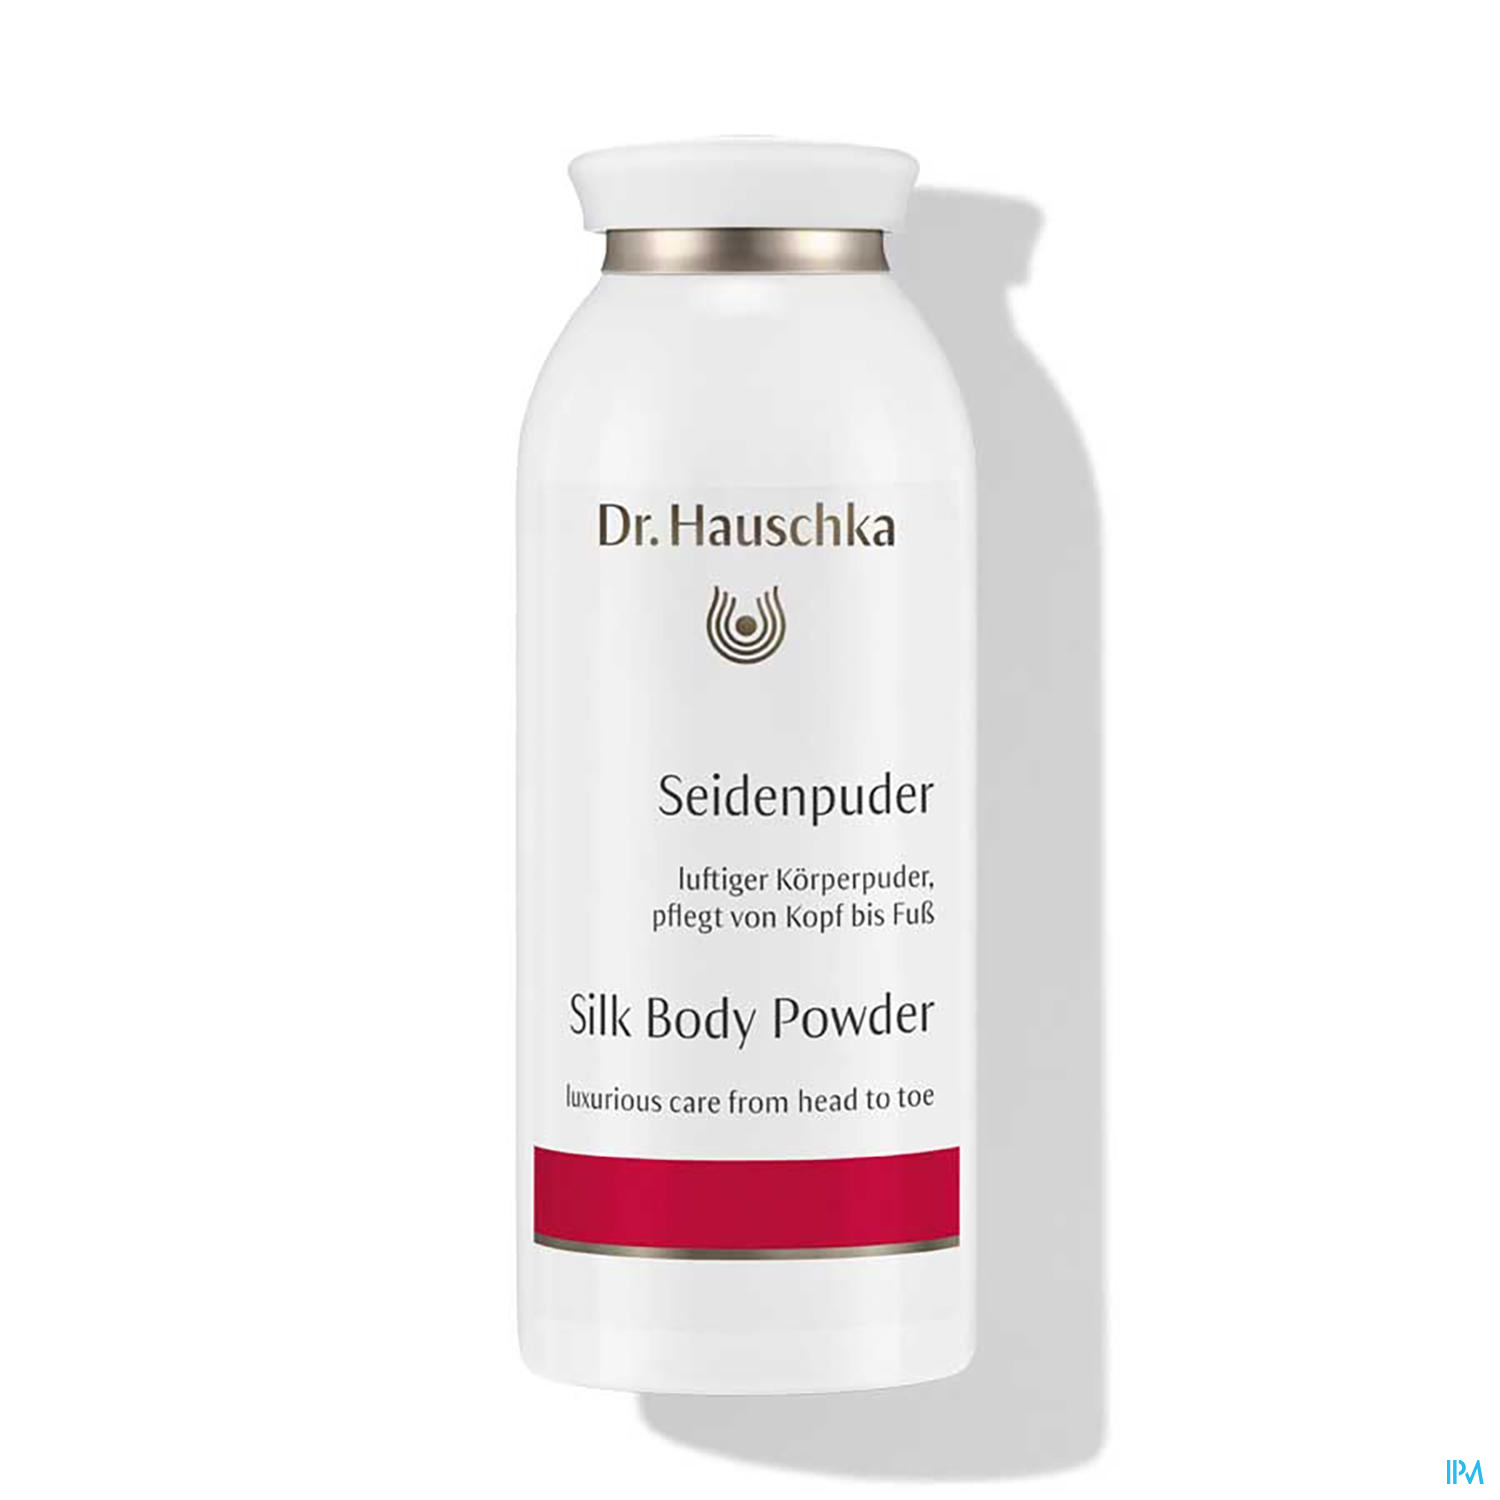 Dr. Hauschka Seidenpuder 50g